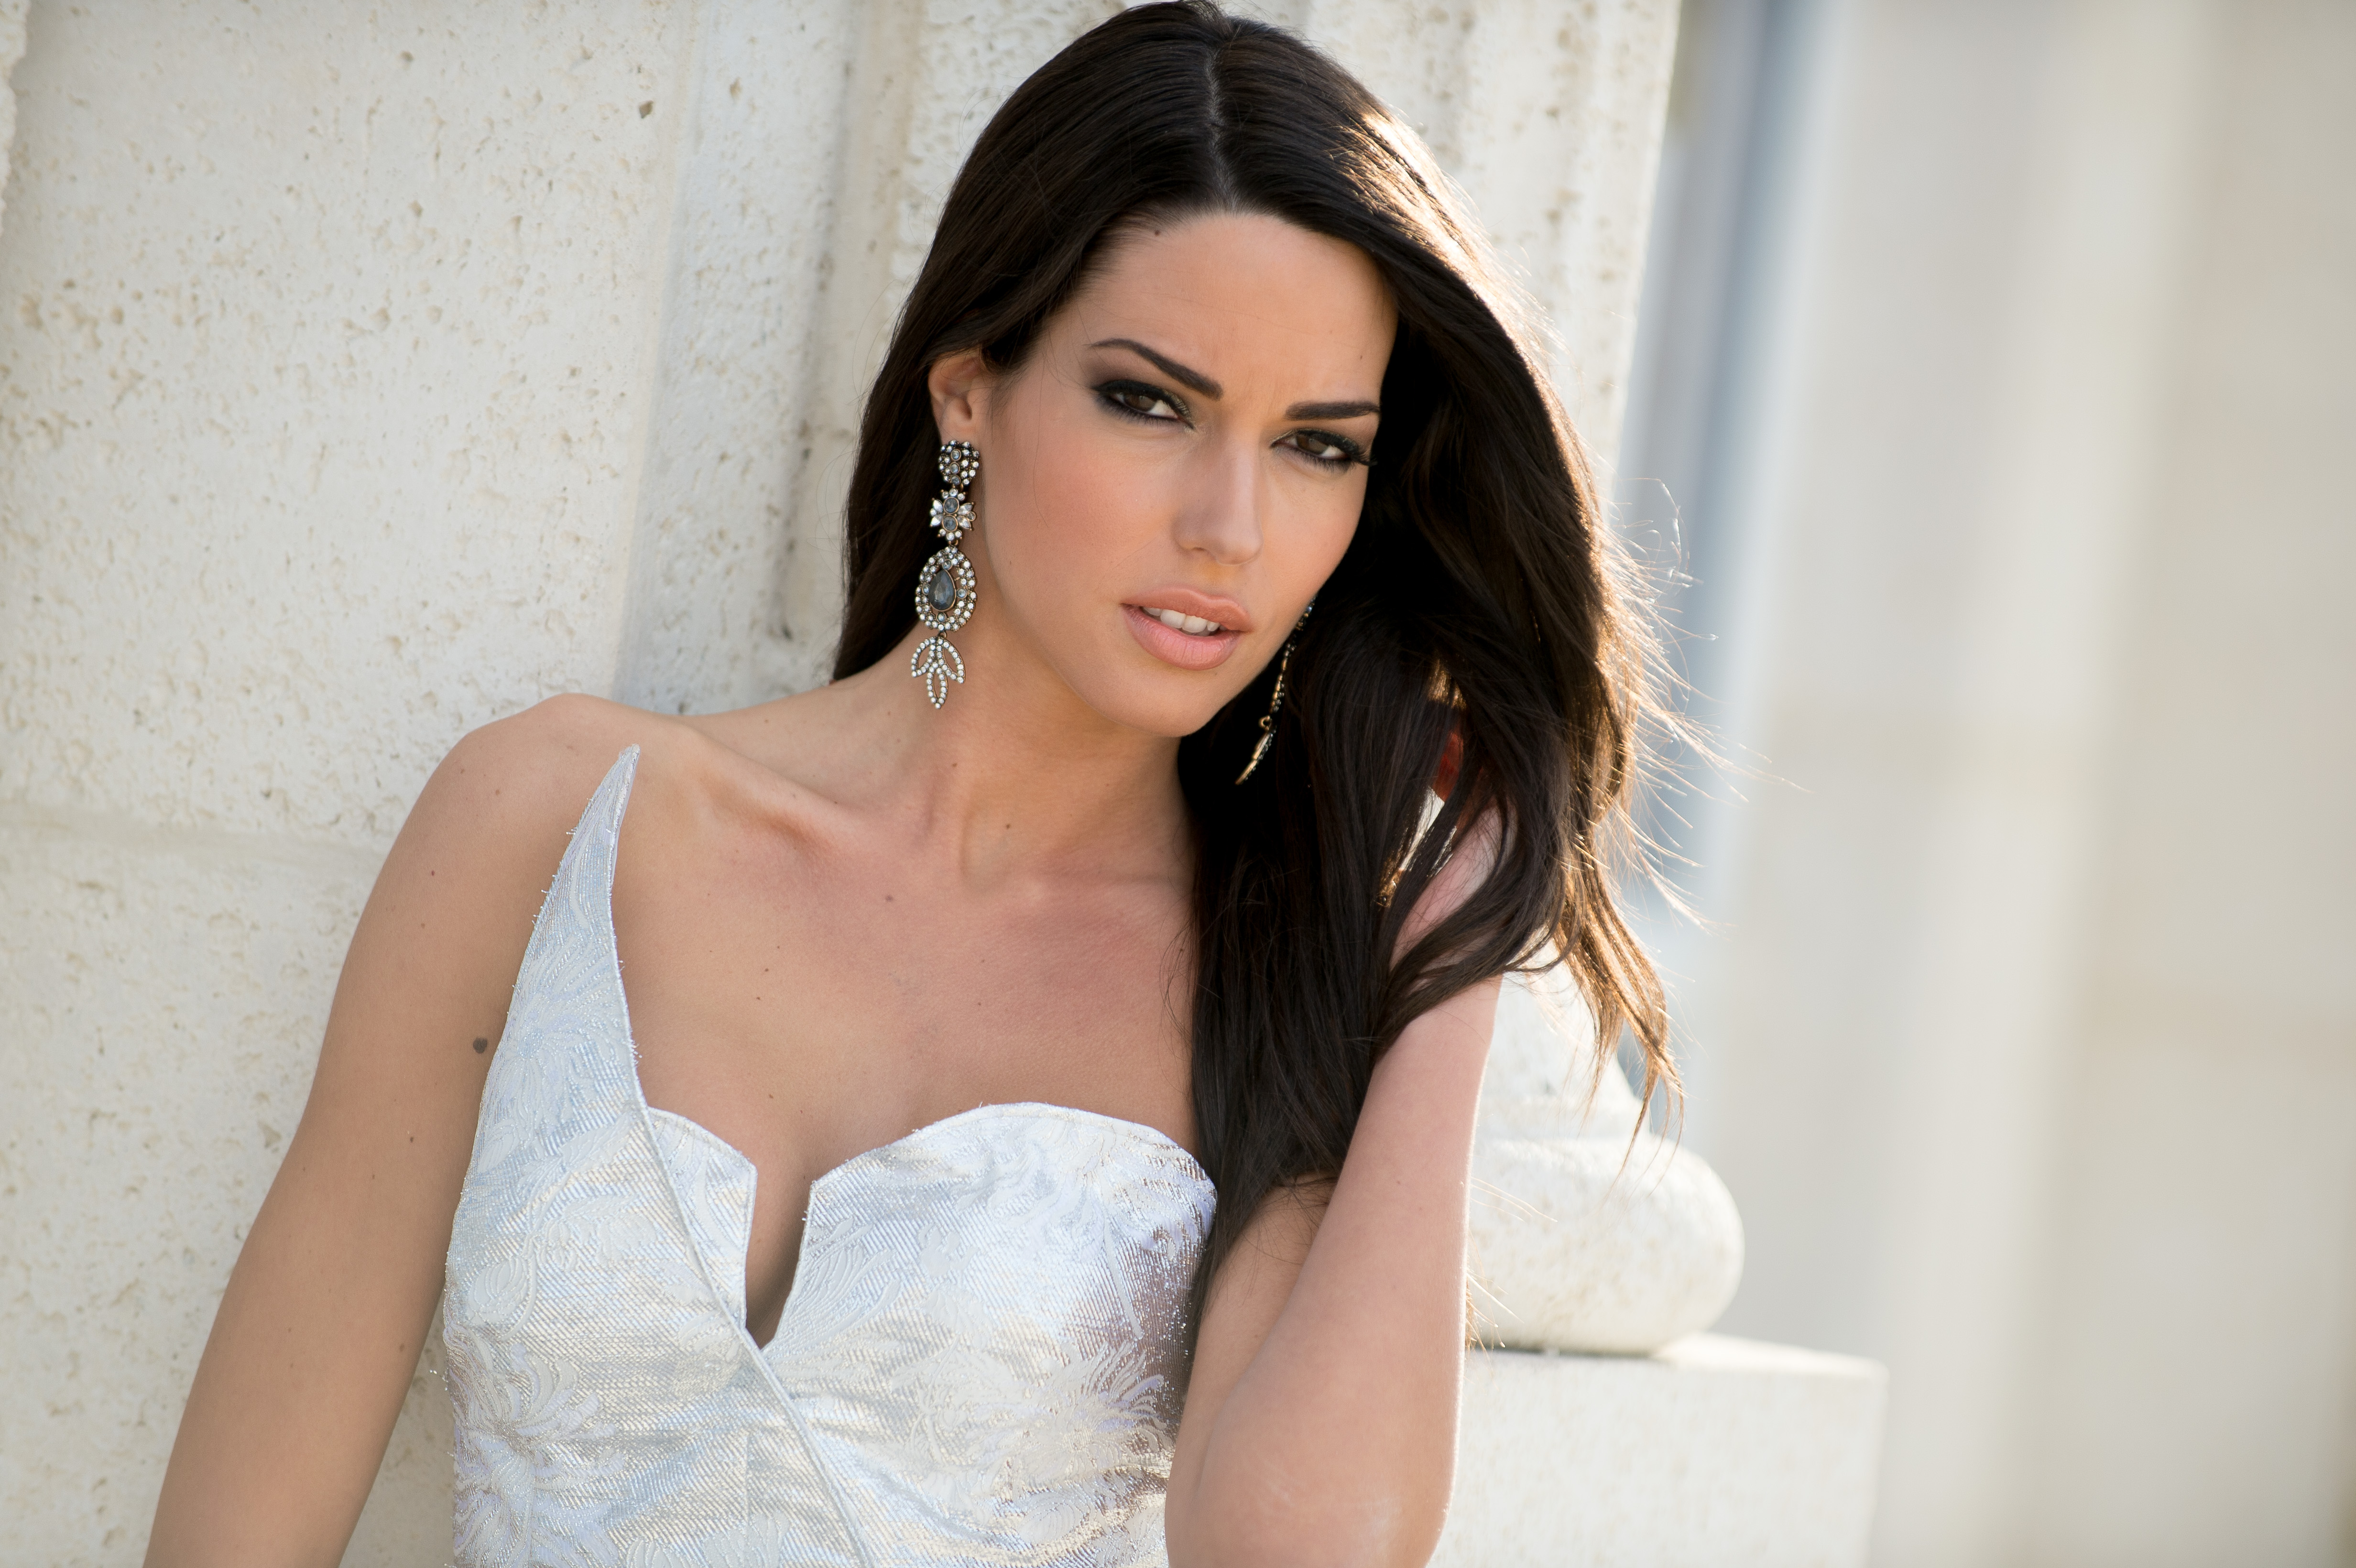 Girl Model Greek Greek Model Miss Greece Earrings Hair Dress 4928x3280